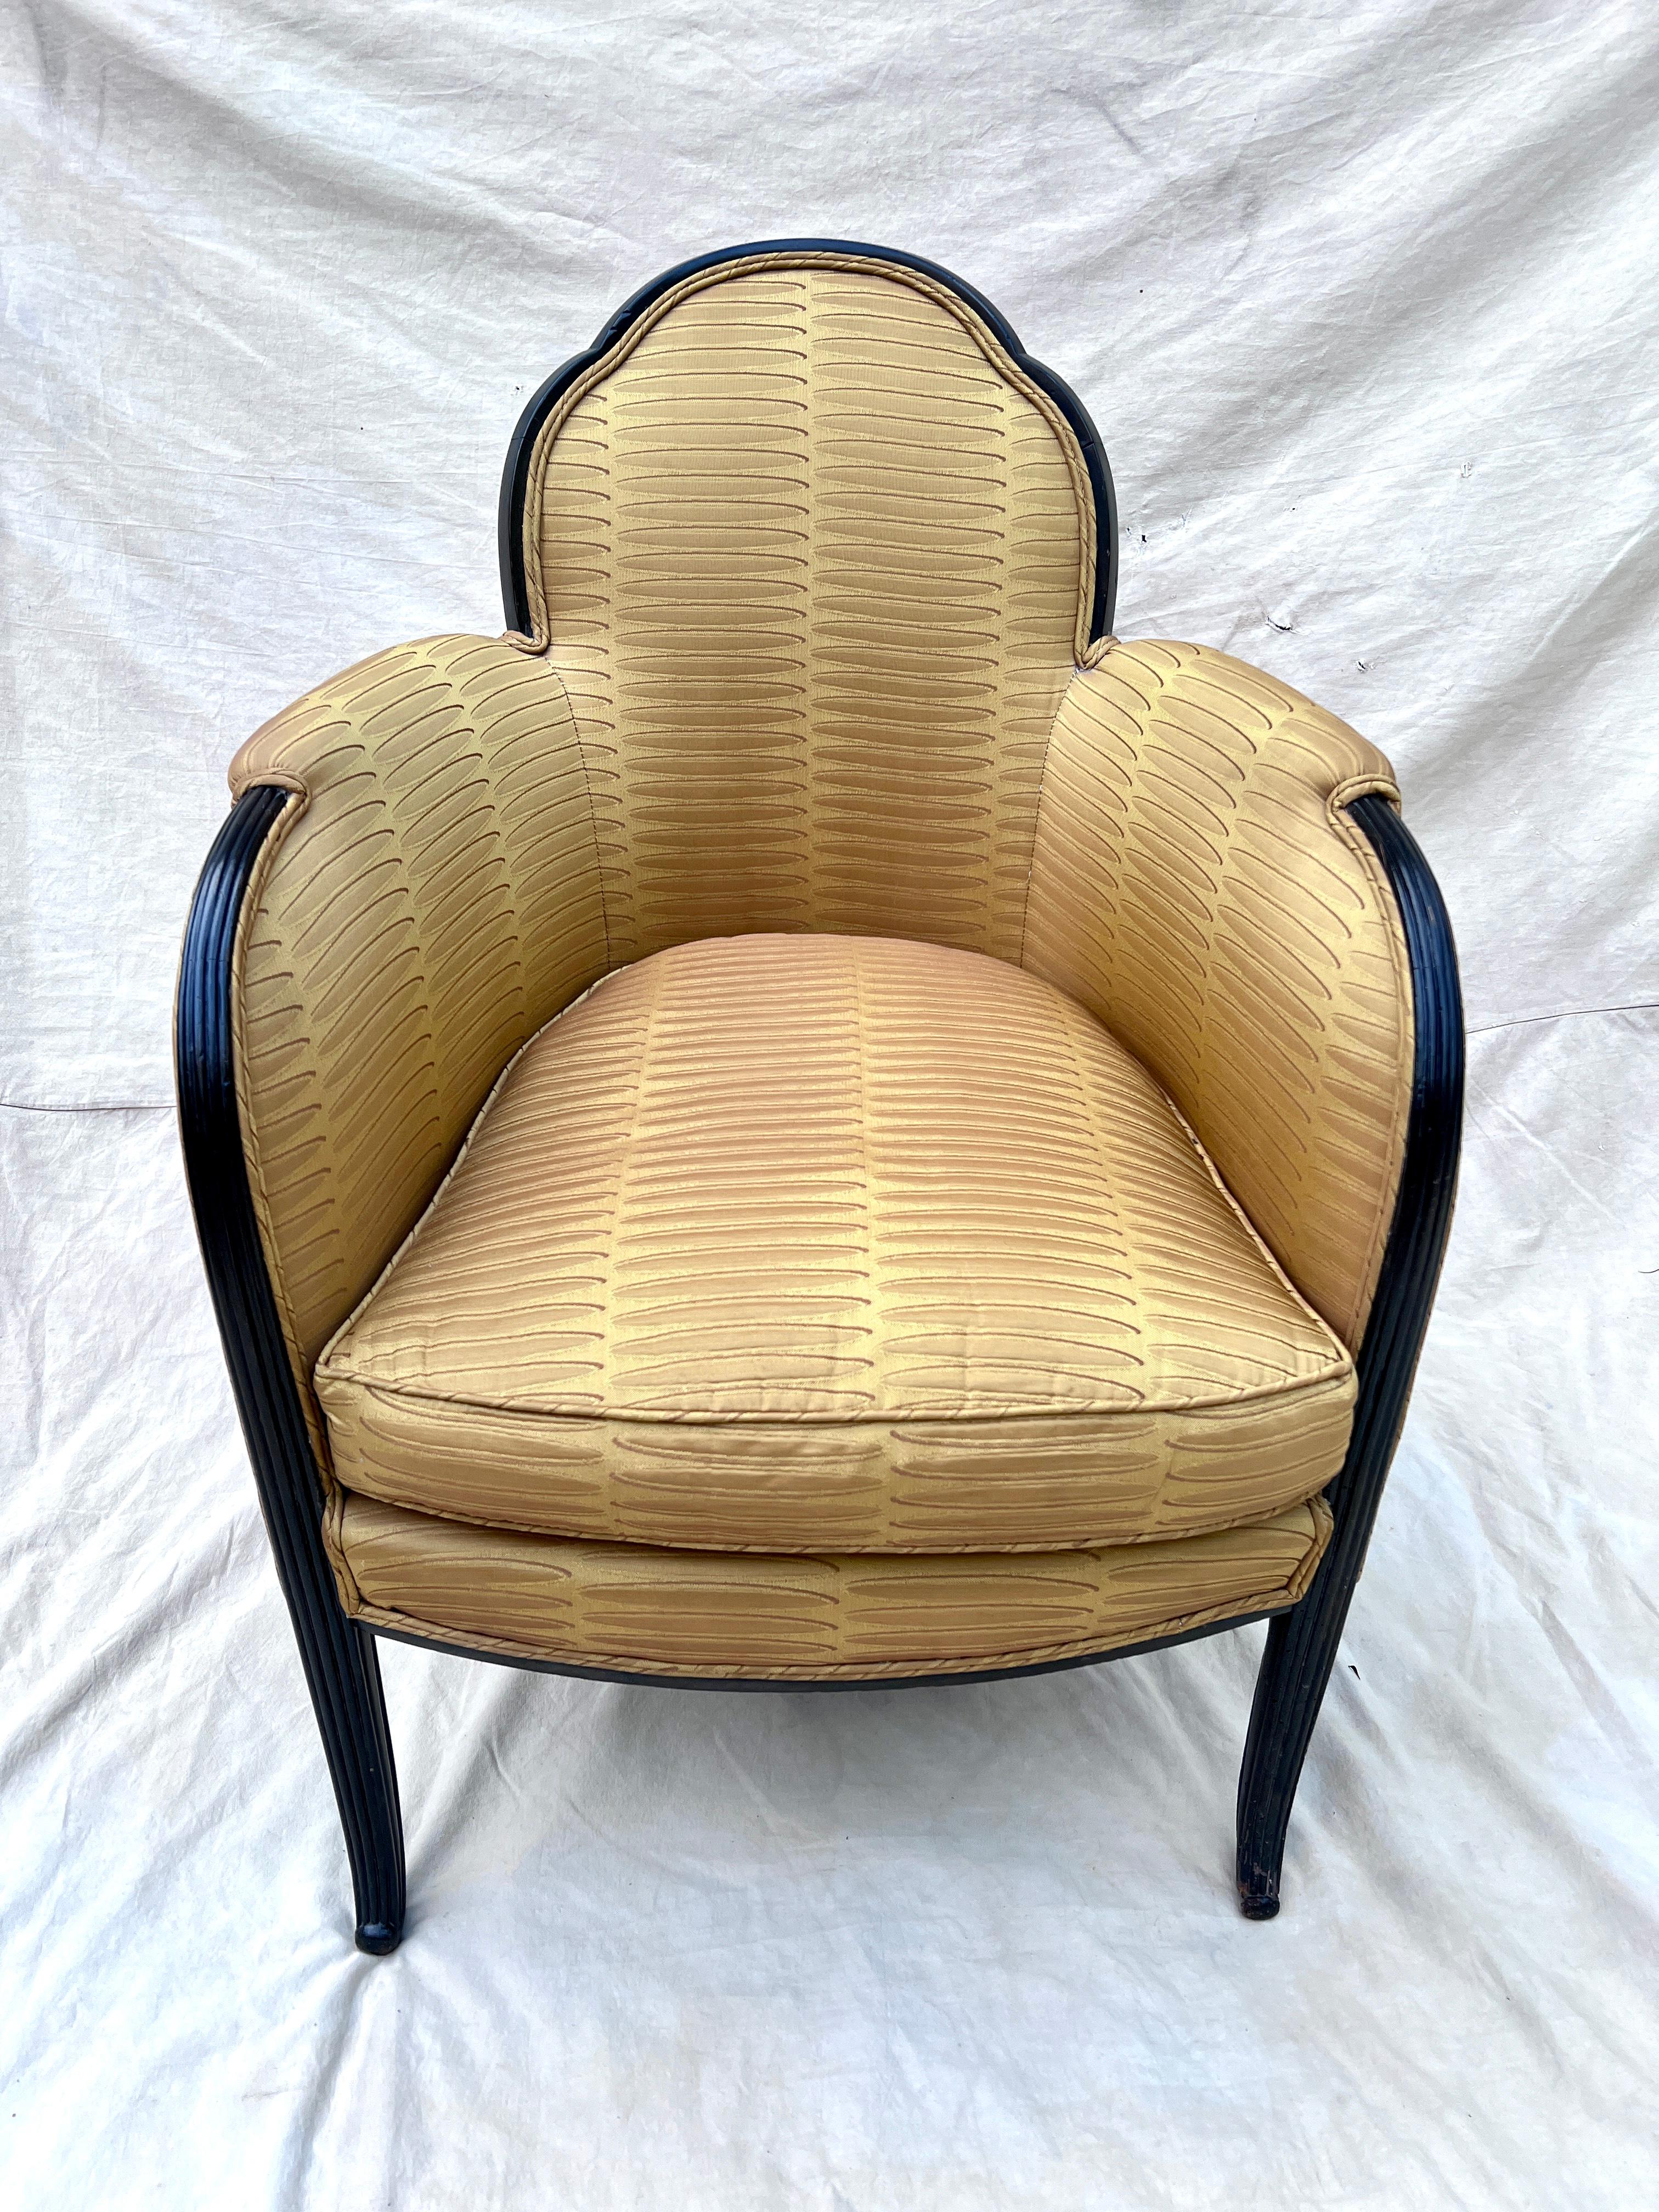 Une superbe paire de chaises bergères françaises dans le style de Paul Follot.  La paire présente un magnifique dossier festonné, un bras gracieusement incurvé, sculpté à la main, qui se prolonge jusqu'à une branche effilée.  Les cadres sont en